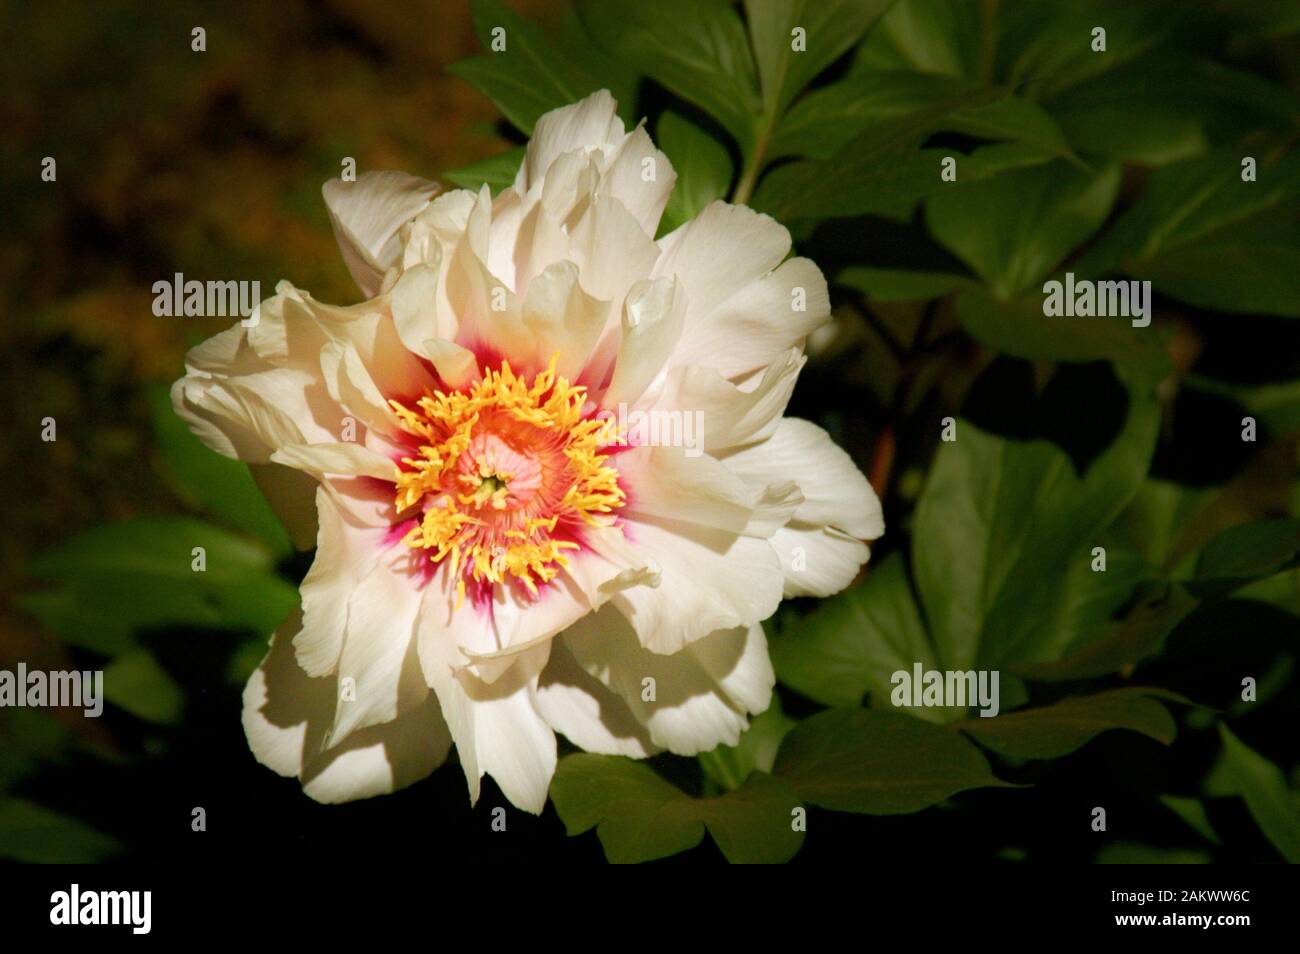 Nahaufnahme eines peinigen, hübschen weißen peinigen Blossums außerhalb der Mitte und gute Beleuchtung Stockfoto